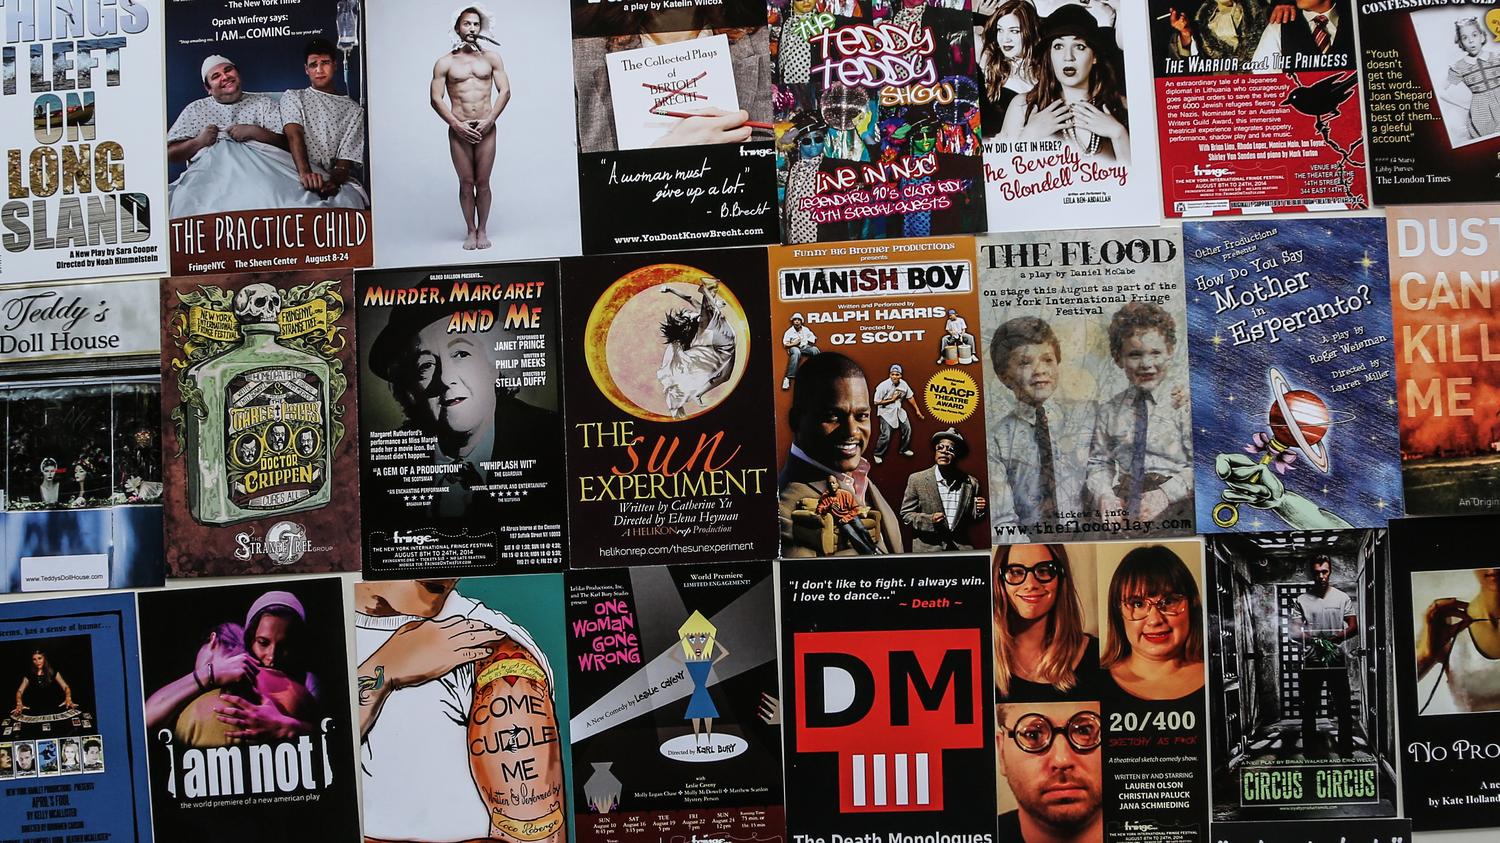 How Fringe is the Fringe Festival? WNYC New York Public Radio